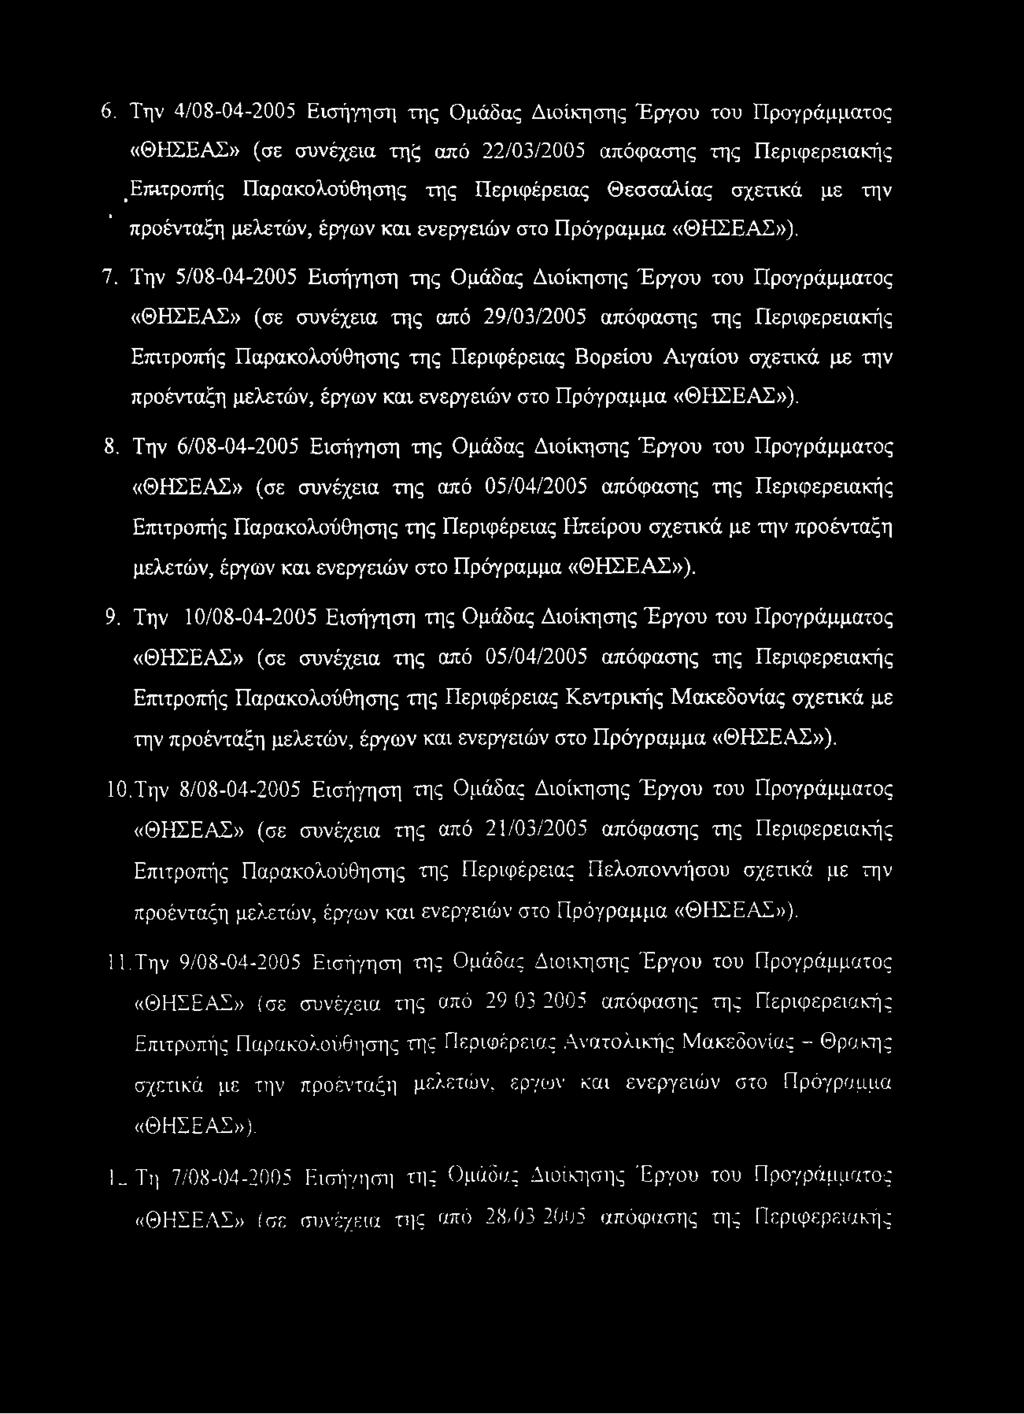 6. Την 4/08-04-2005 Εισήγηση της Ομάδας Διοίκησης Έργου του Προγράμματος «ΘΗΣΕΑΣ» (σε συνέχεια τηξ από 22/03/2005 απόφασης της Περιφερειακής <Επιτροπής Παρακολούθησης της Περιφέρειας Θεσσαλίας